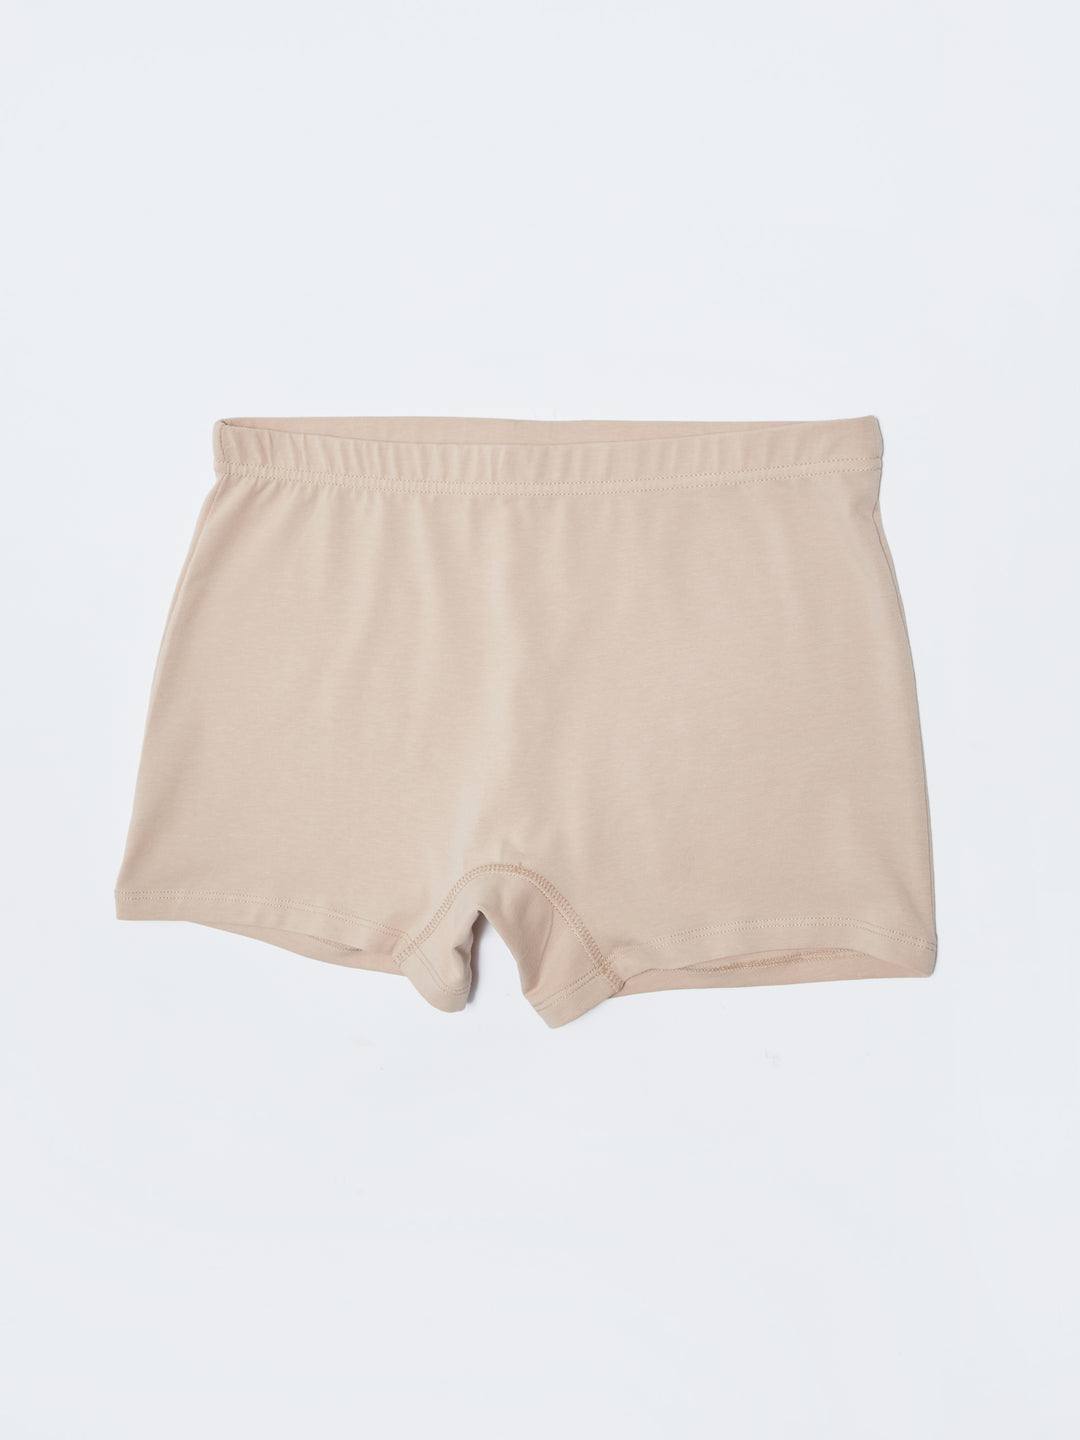 Underwear - Knicker LC Waikiki, Moudda Tunisie W20450Z8